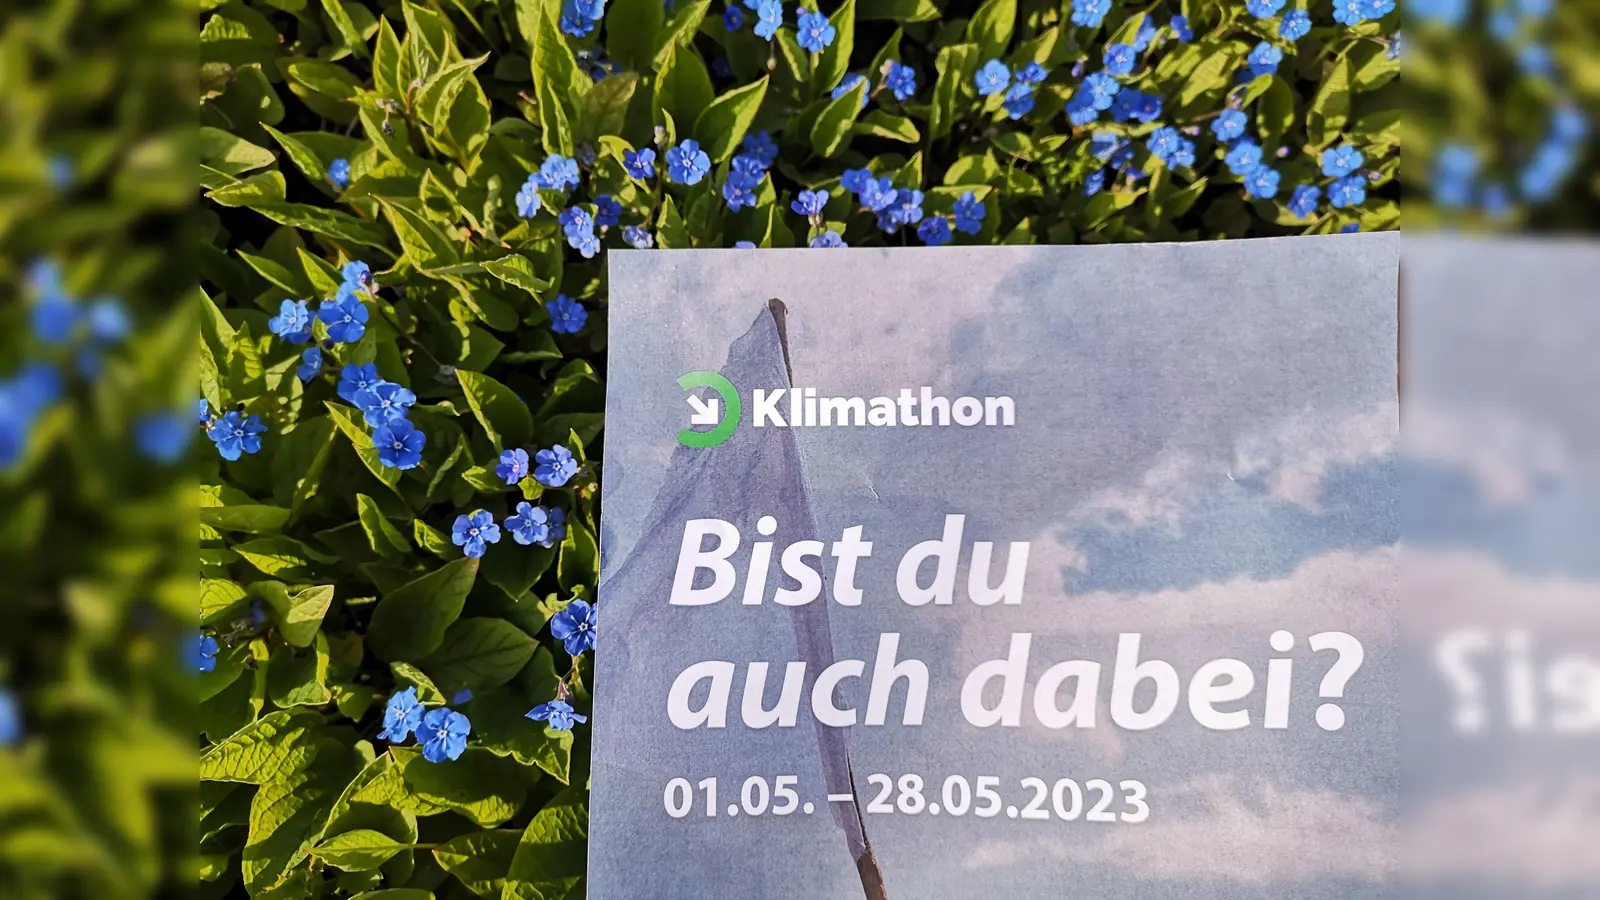 Der Klimathon startet am 1. Mai.  (Foto: Stadt Warburg)